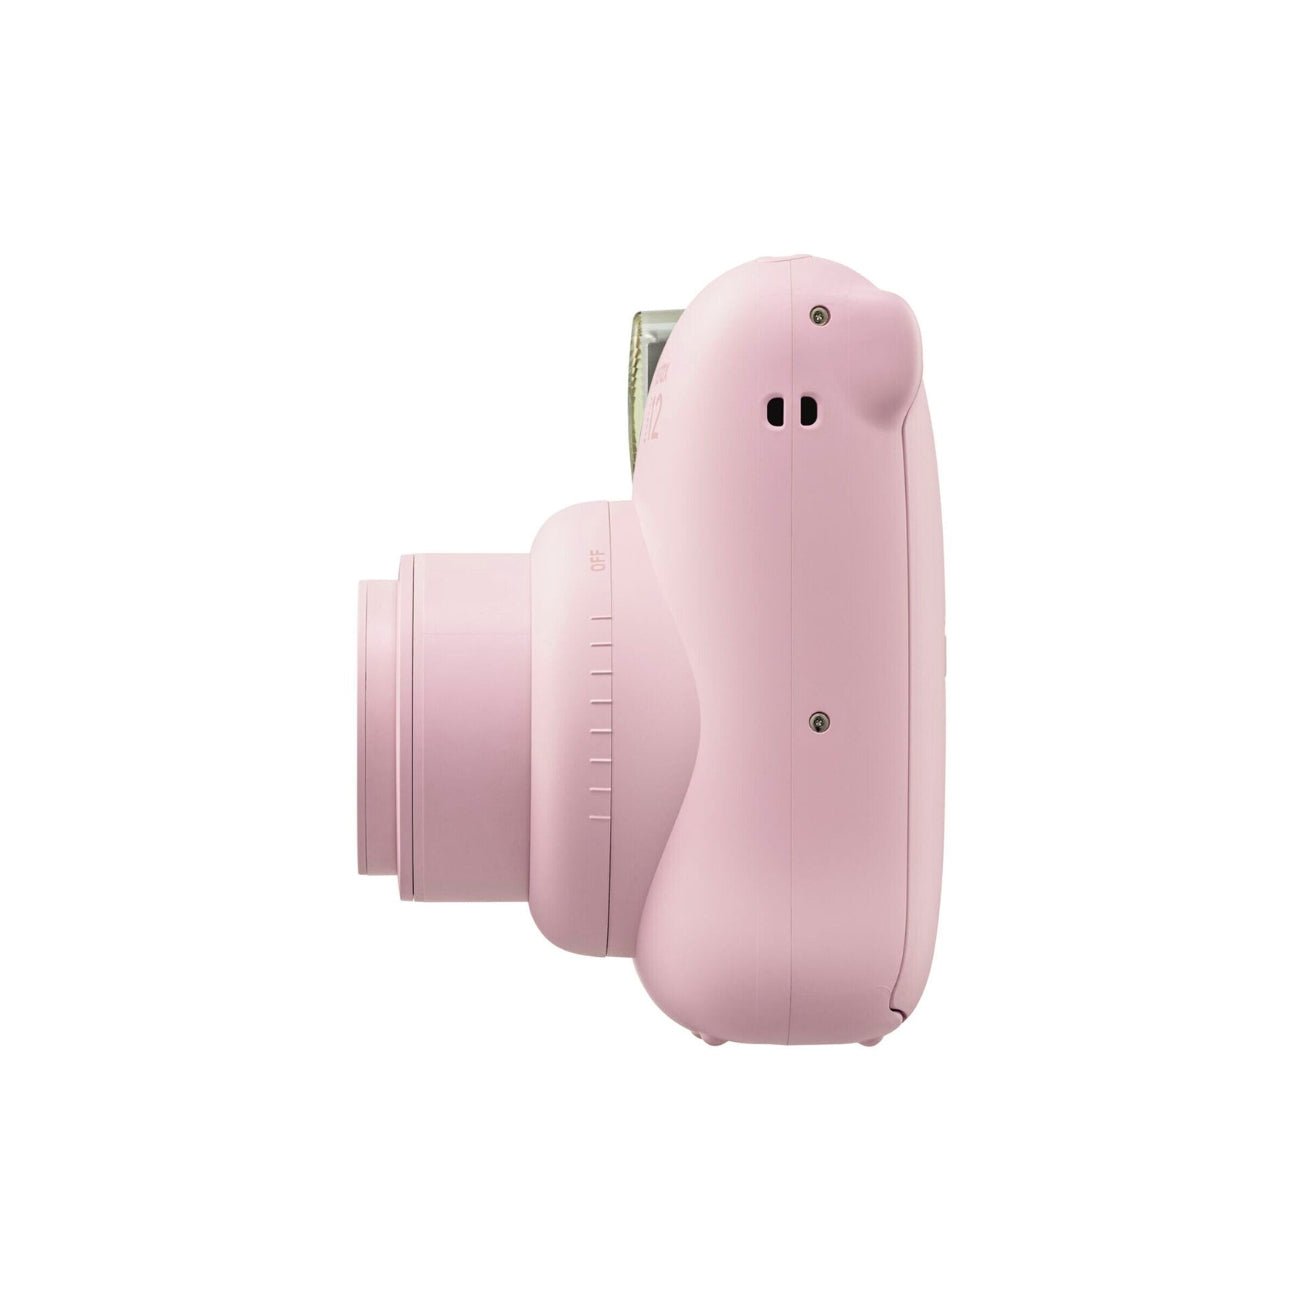 Fujifilm INSTAX Mini 12 Instant Film Camera (Pink) - Side view